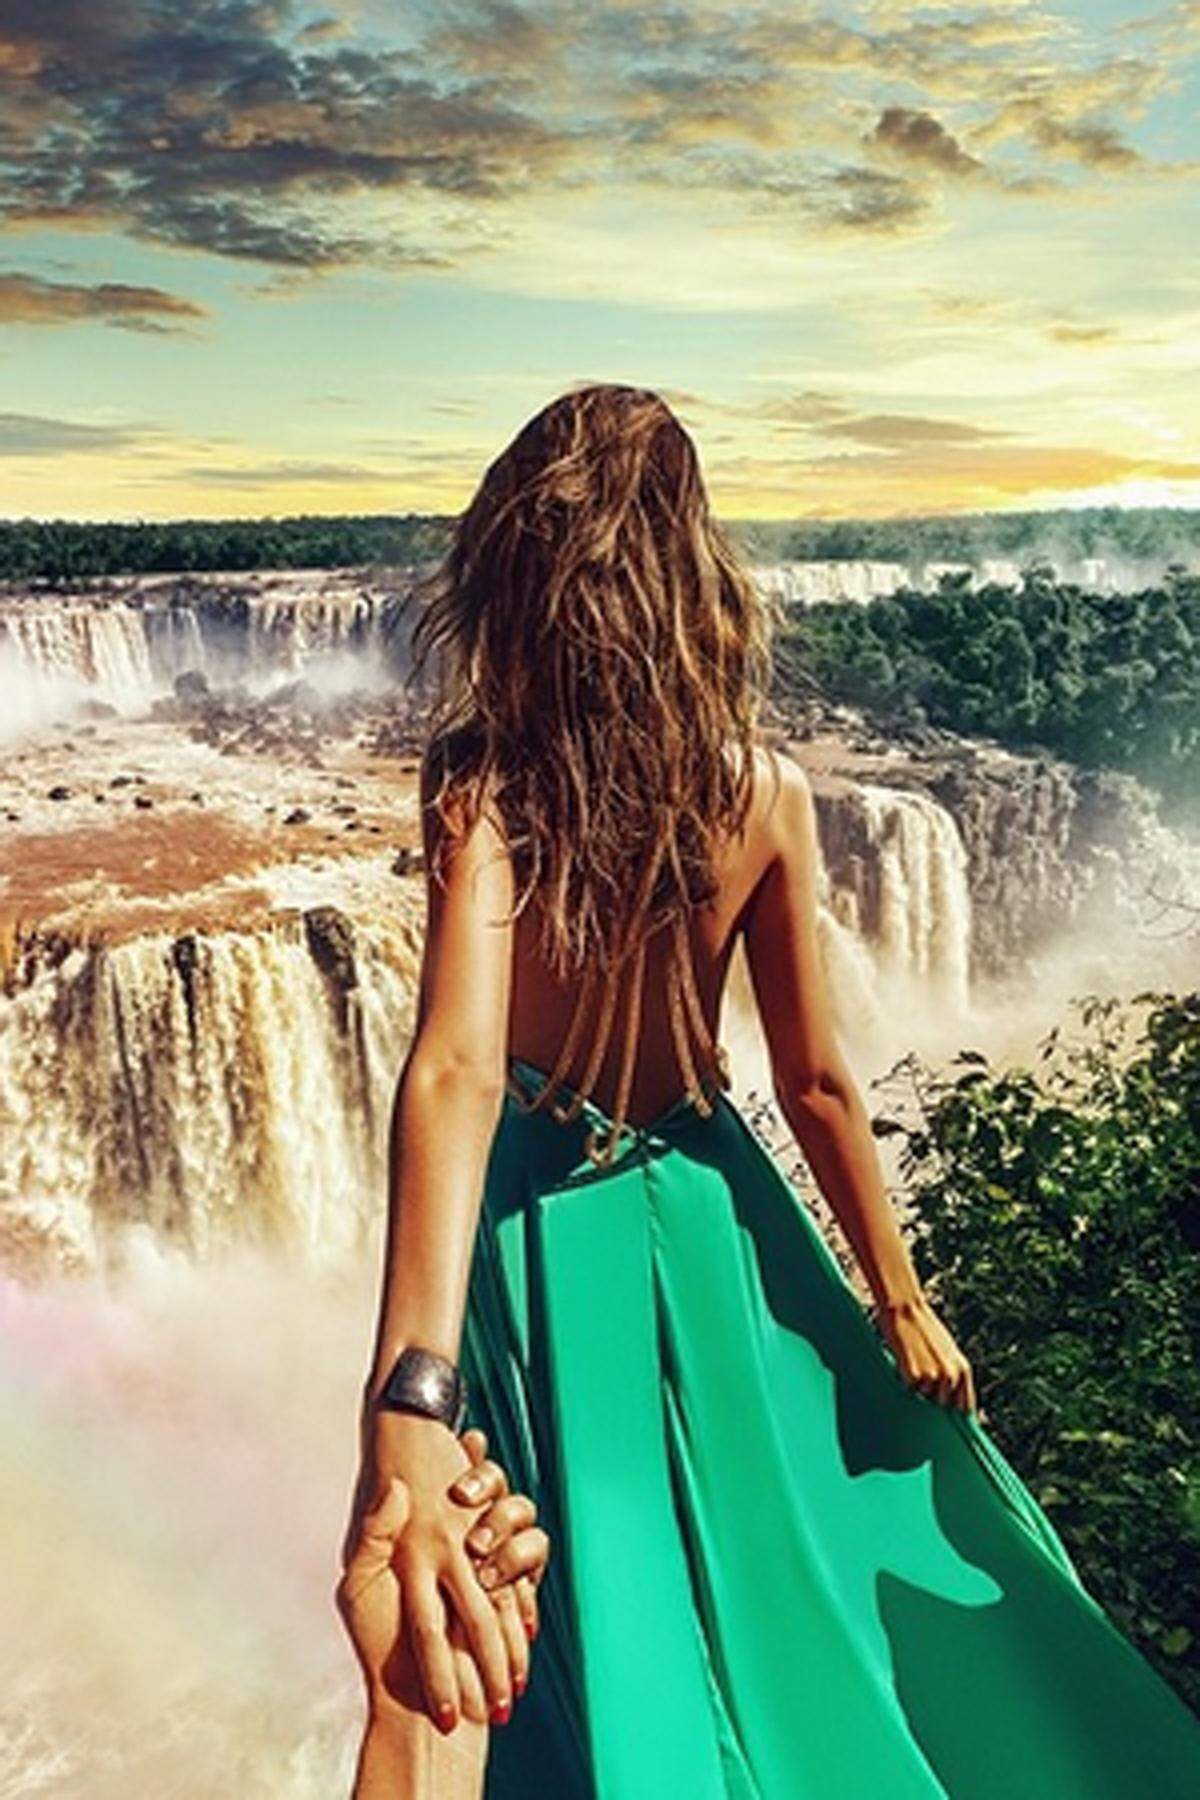 Ihre Gesichter kennt kaum jemand im Netz. Dennoch gehören Murad und Nataly Osmann zu den bekanntesten Foto-Pärchen der Instagram-Welt. Bei den Iguazú Wasserfälle in Brasilien.